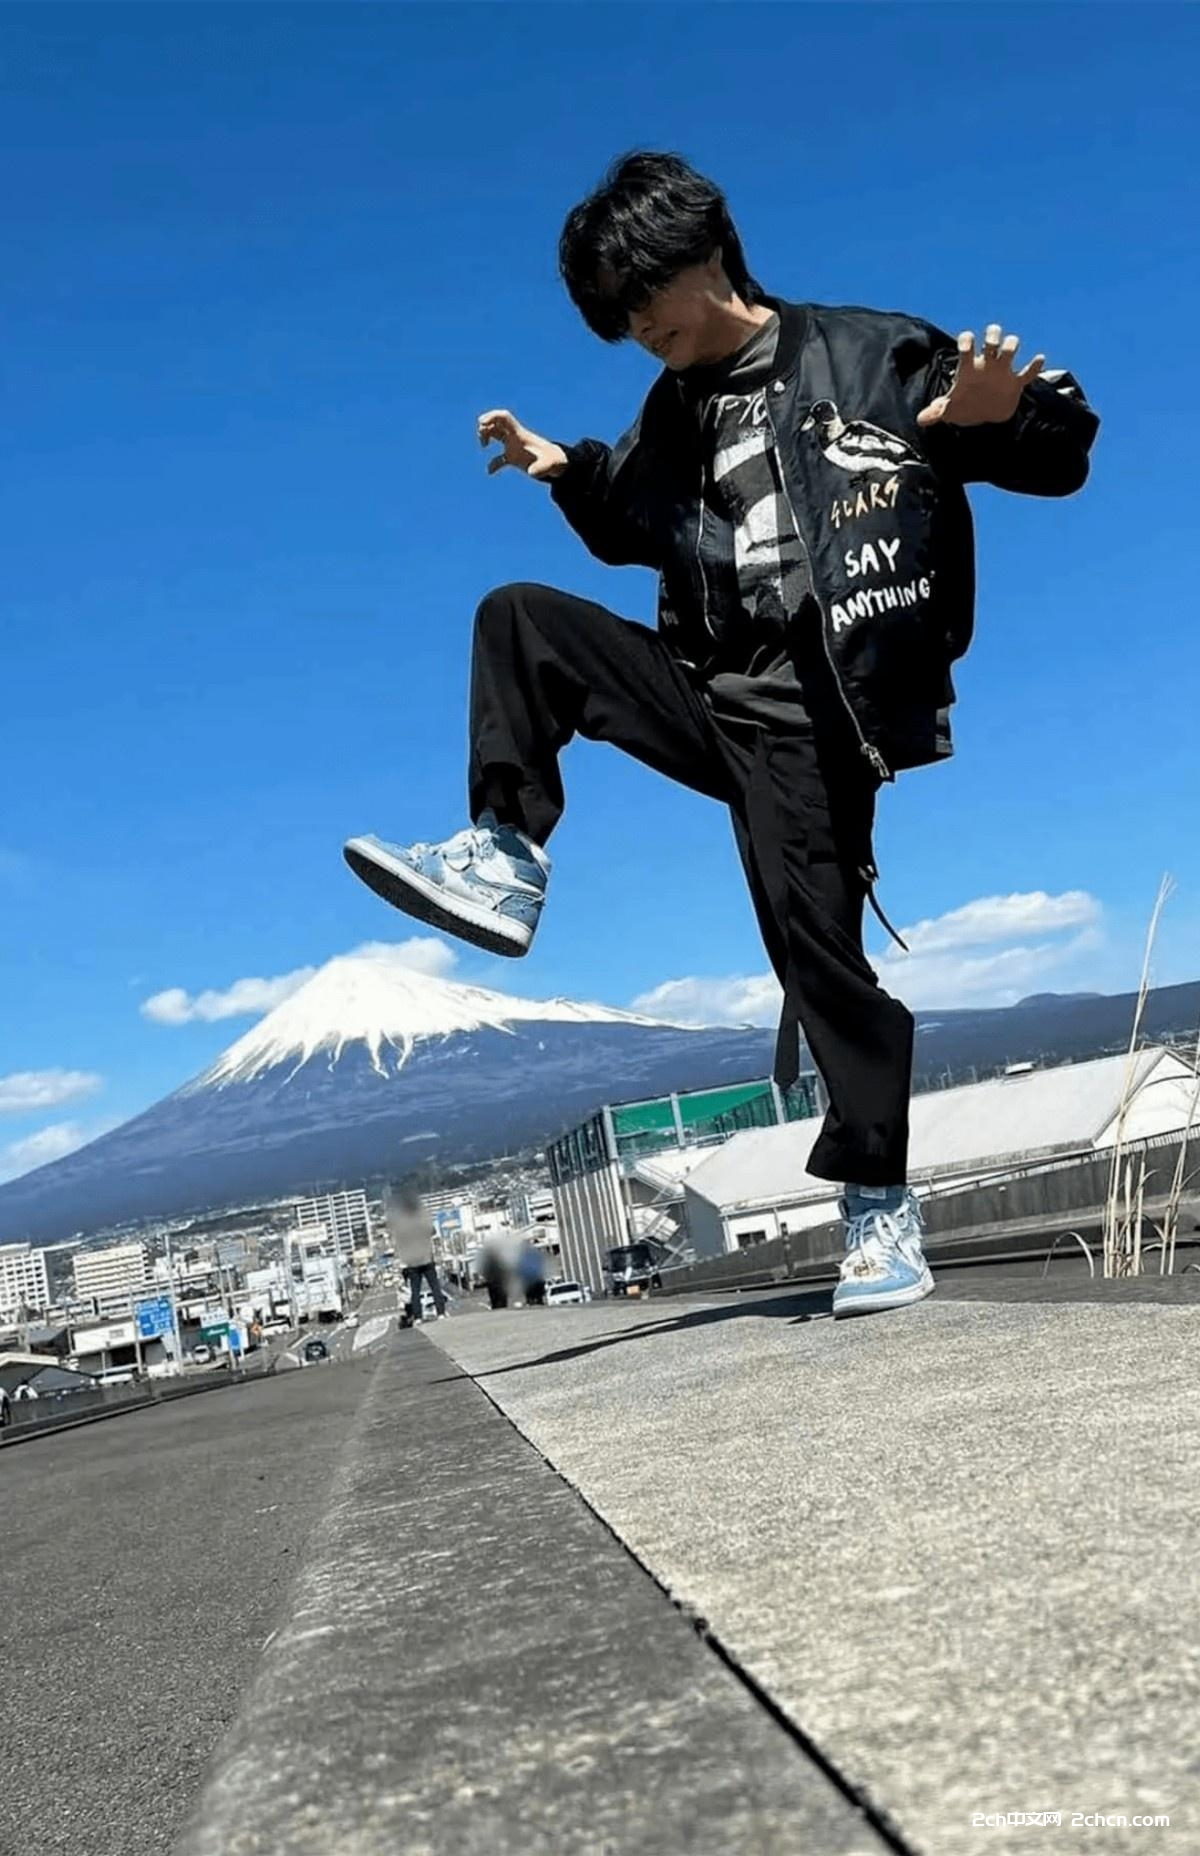 2ch：日本艺人因脚踩富士山拍照被骂惨 日本网民「气愤」「对富士山太失礼」「不要侮辱富士山」